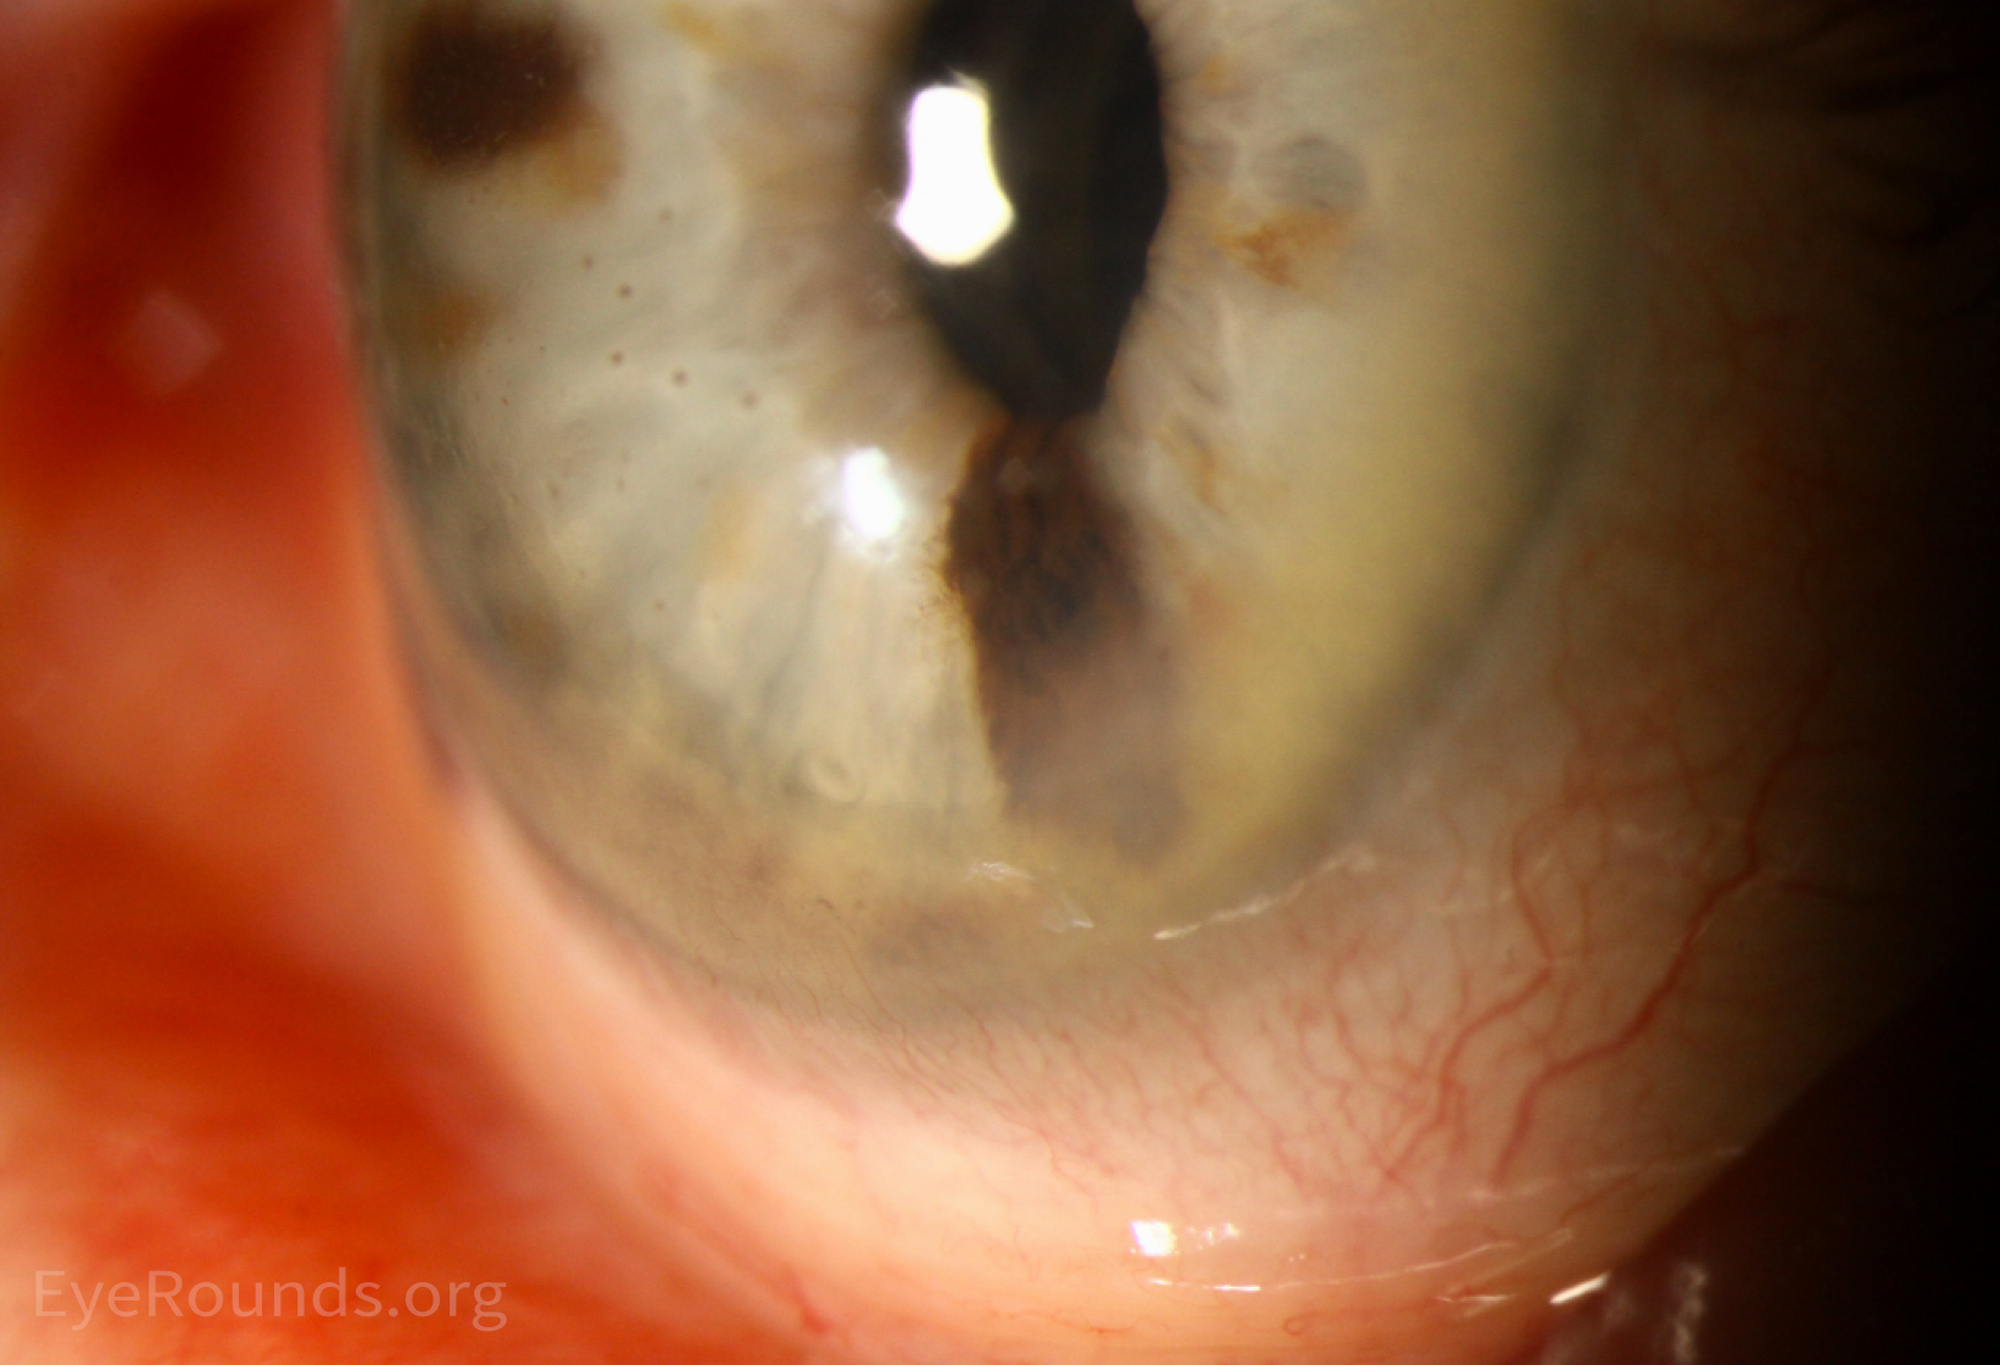 Pigmented keratic precipitates on the corneal endothelium